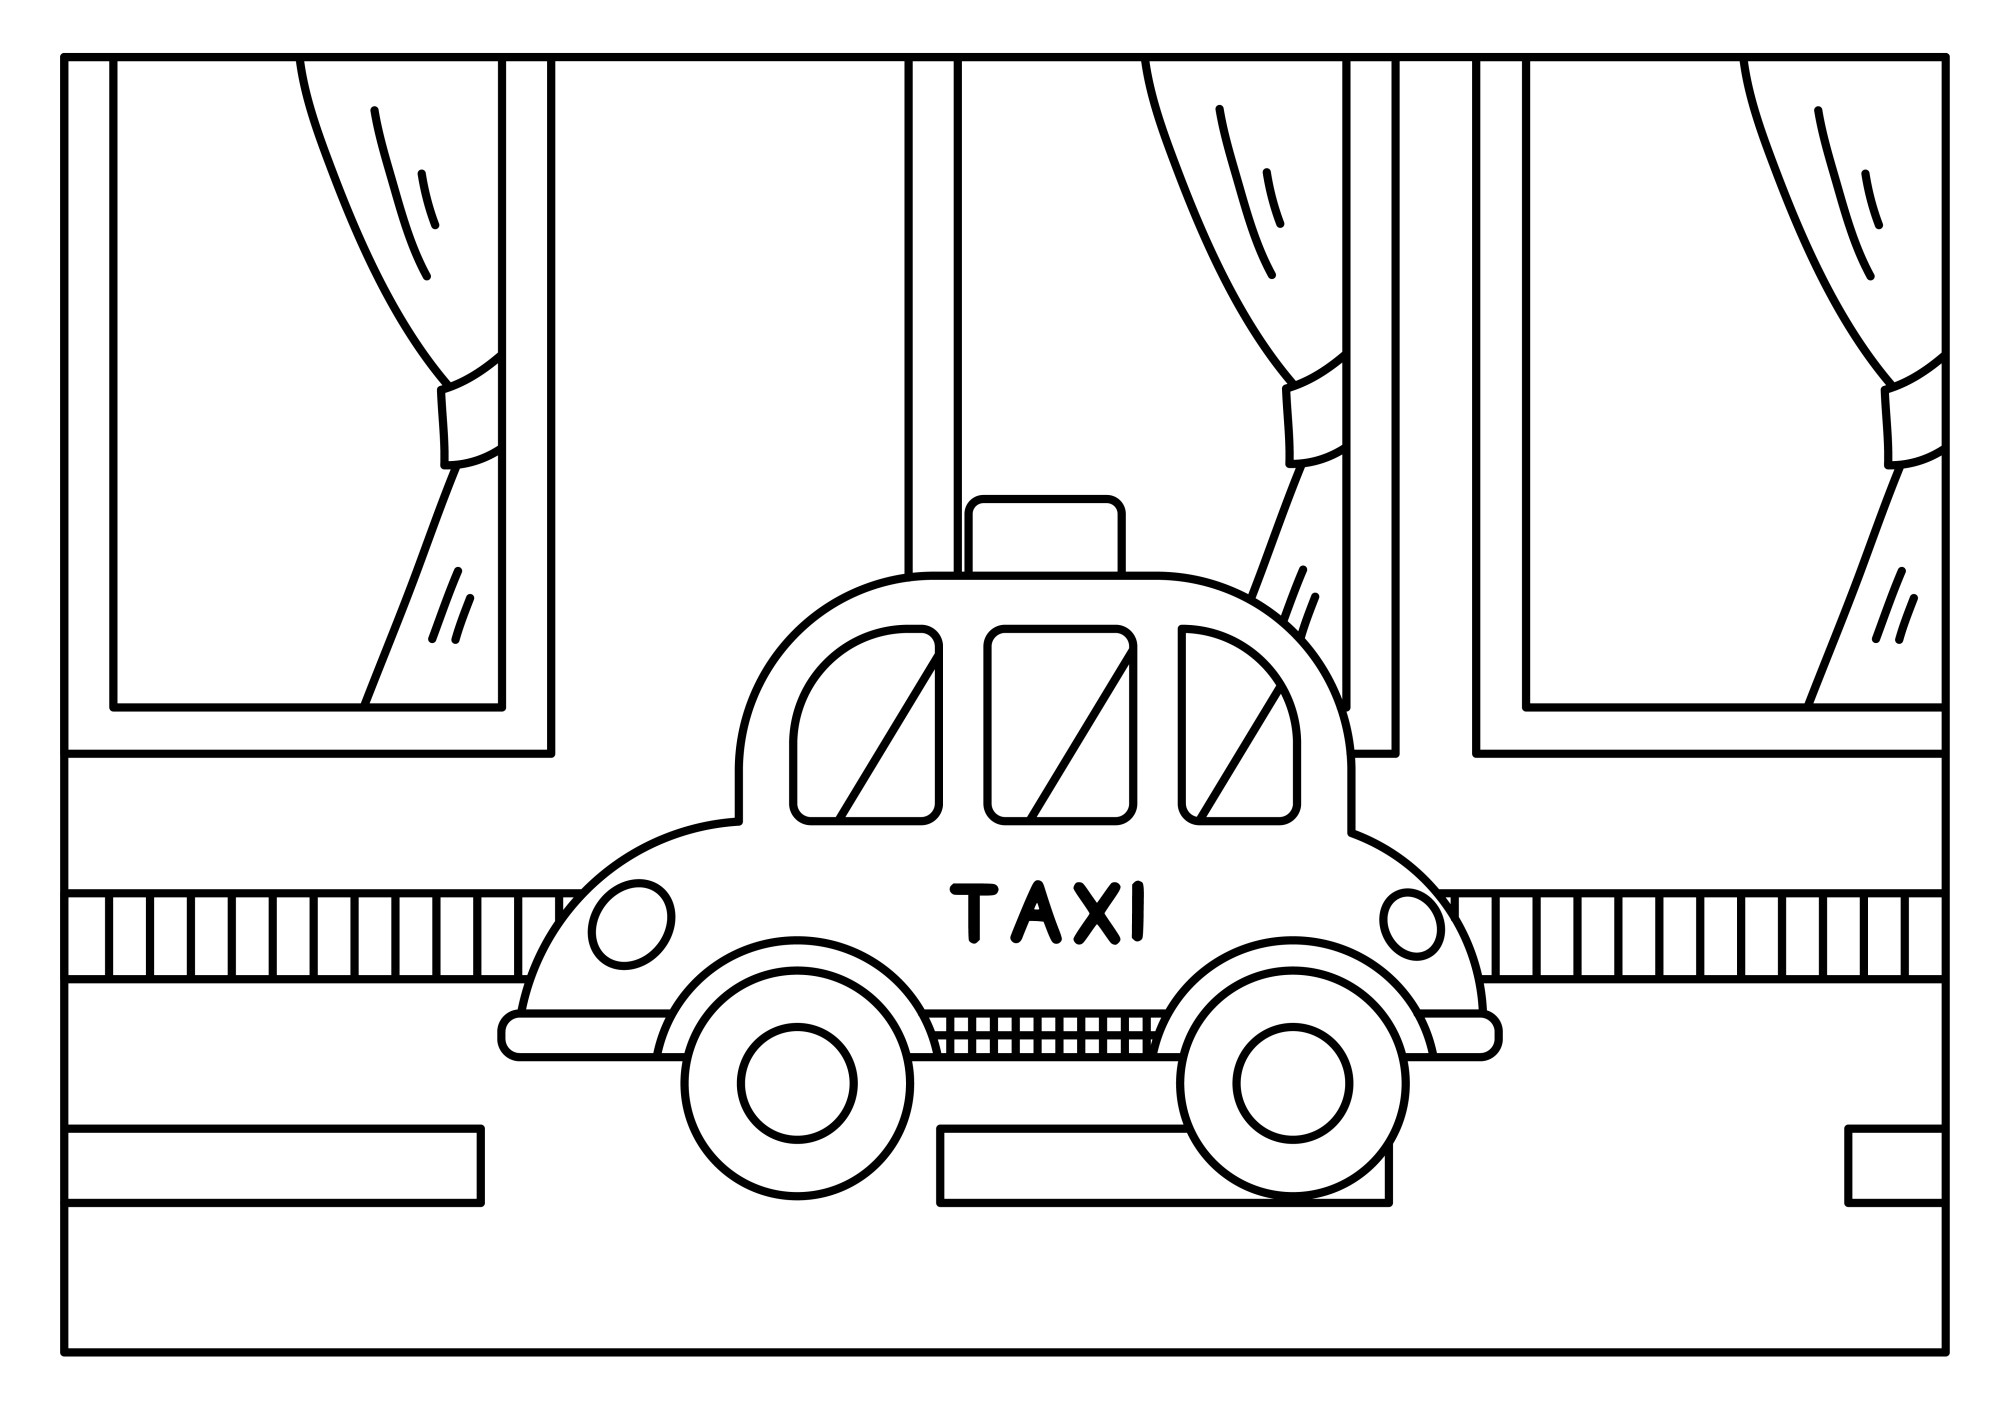 Раскраска для детей: такси стоит у зданий